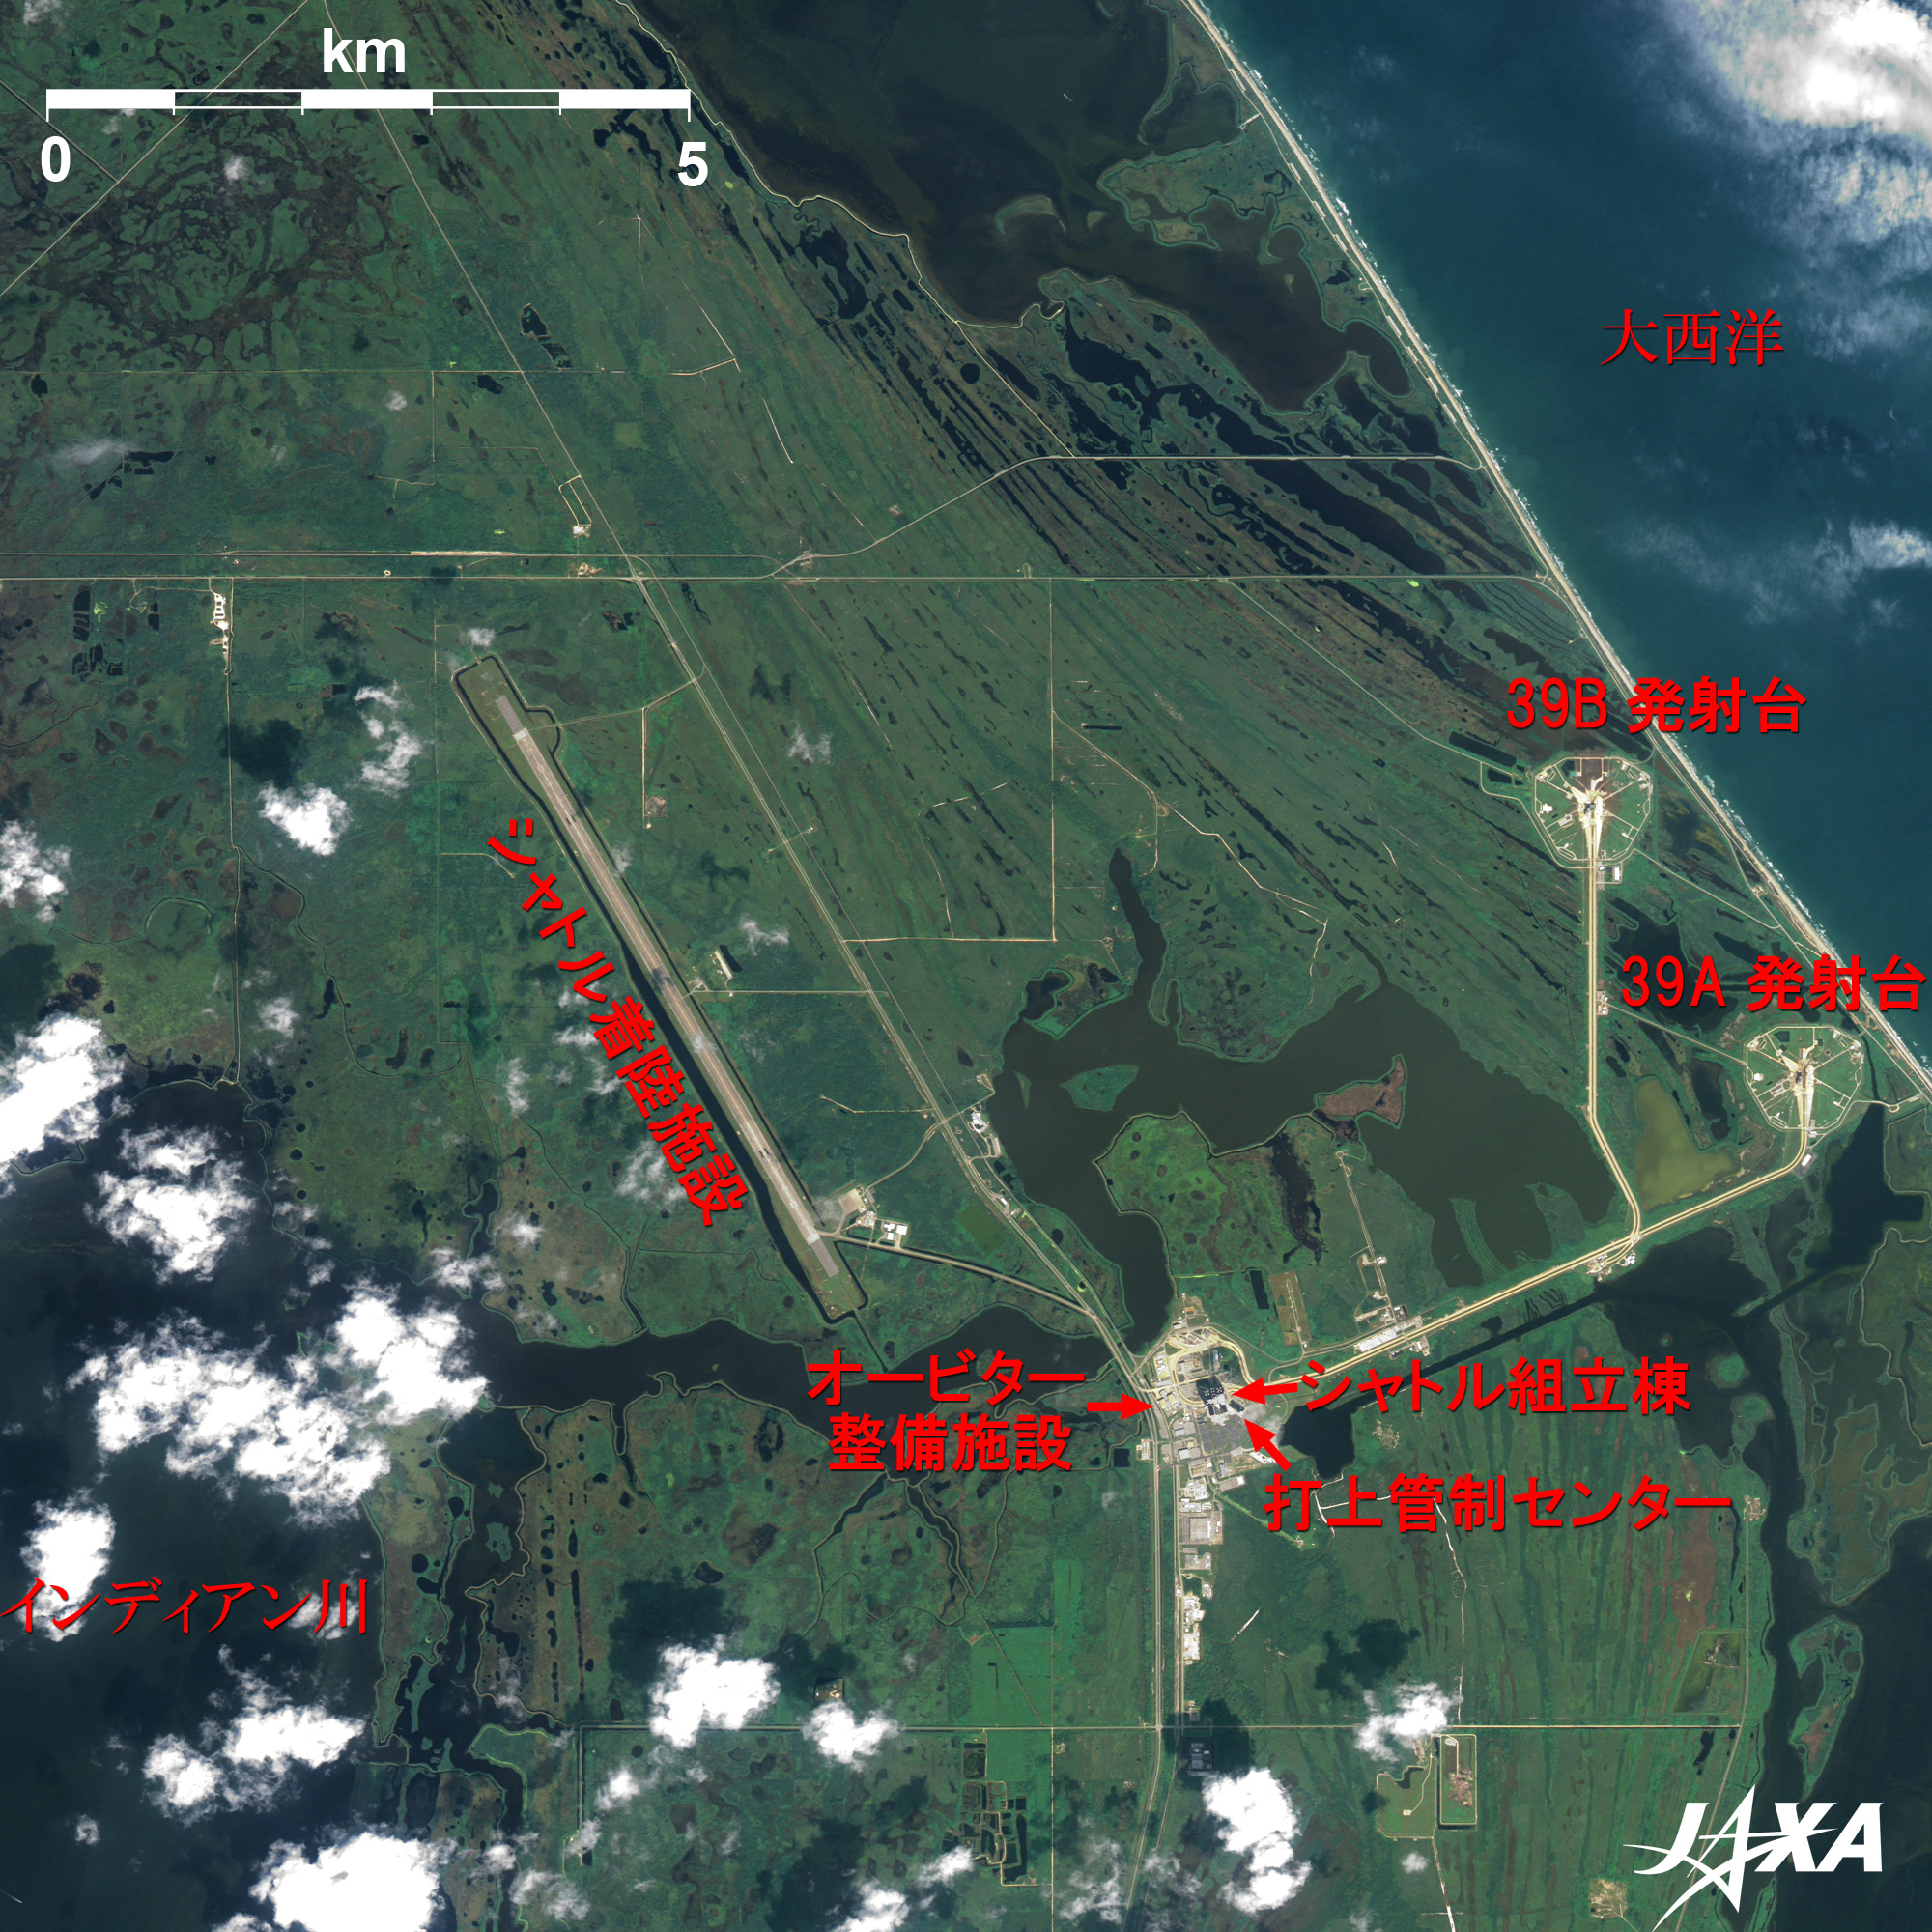 きぼう が飛び立つケネディ宇宙センター 地球が見える Jaxa 第一宇宙技術部門 地球観測研究センター Eorc